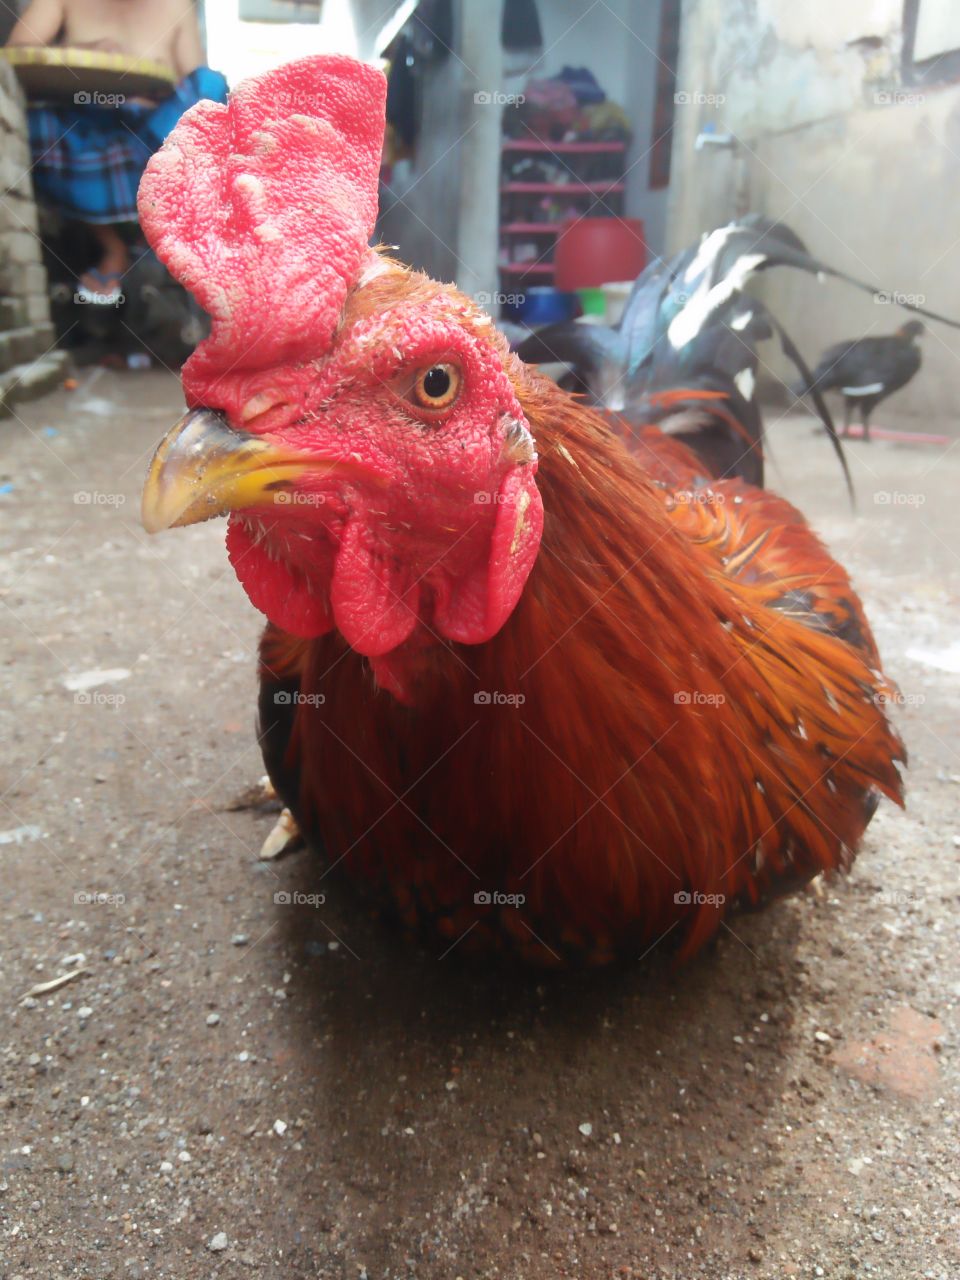 Ayam Jago